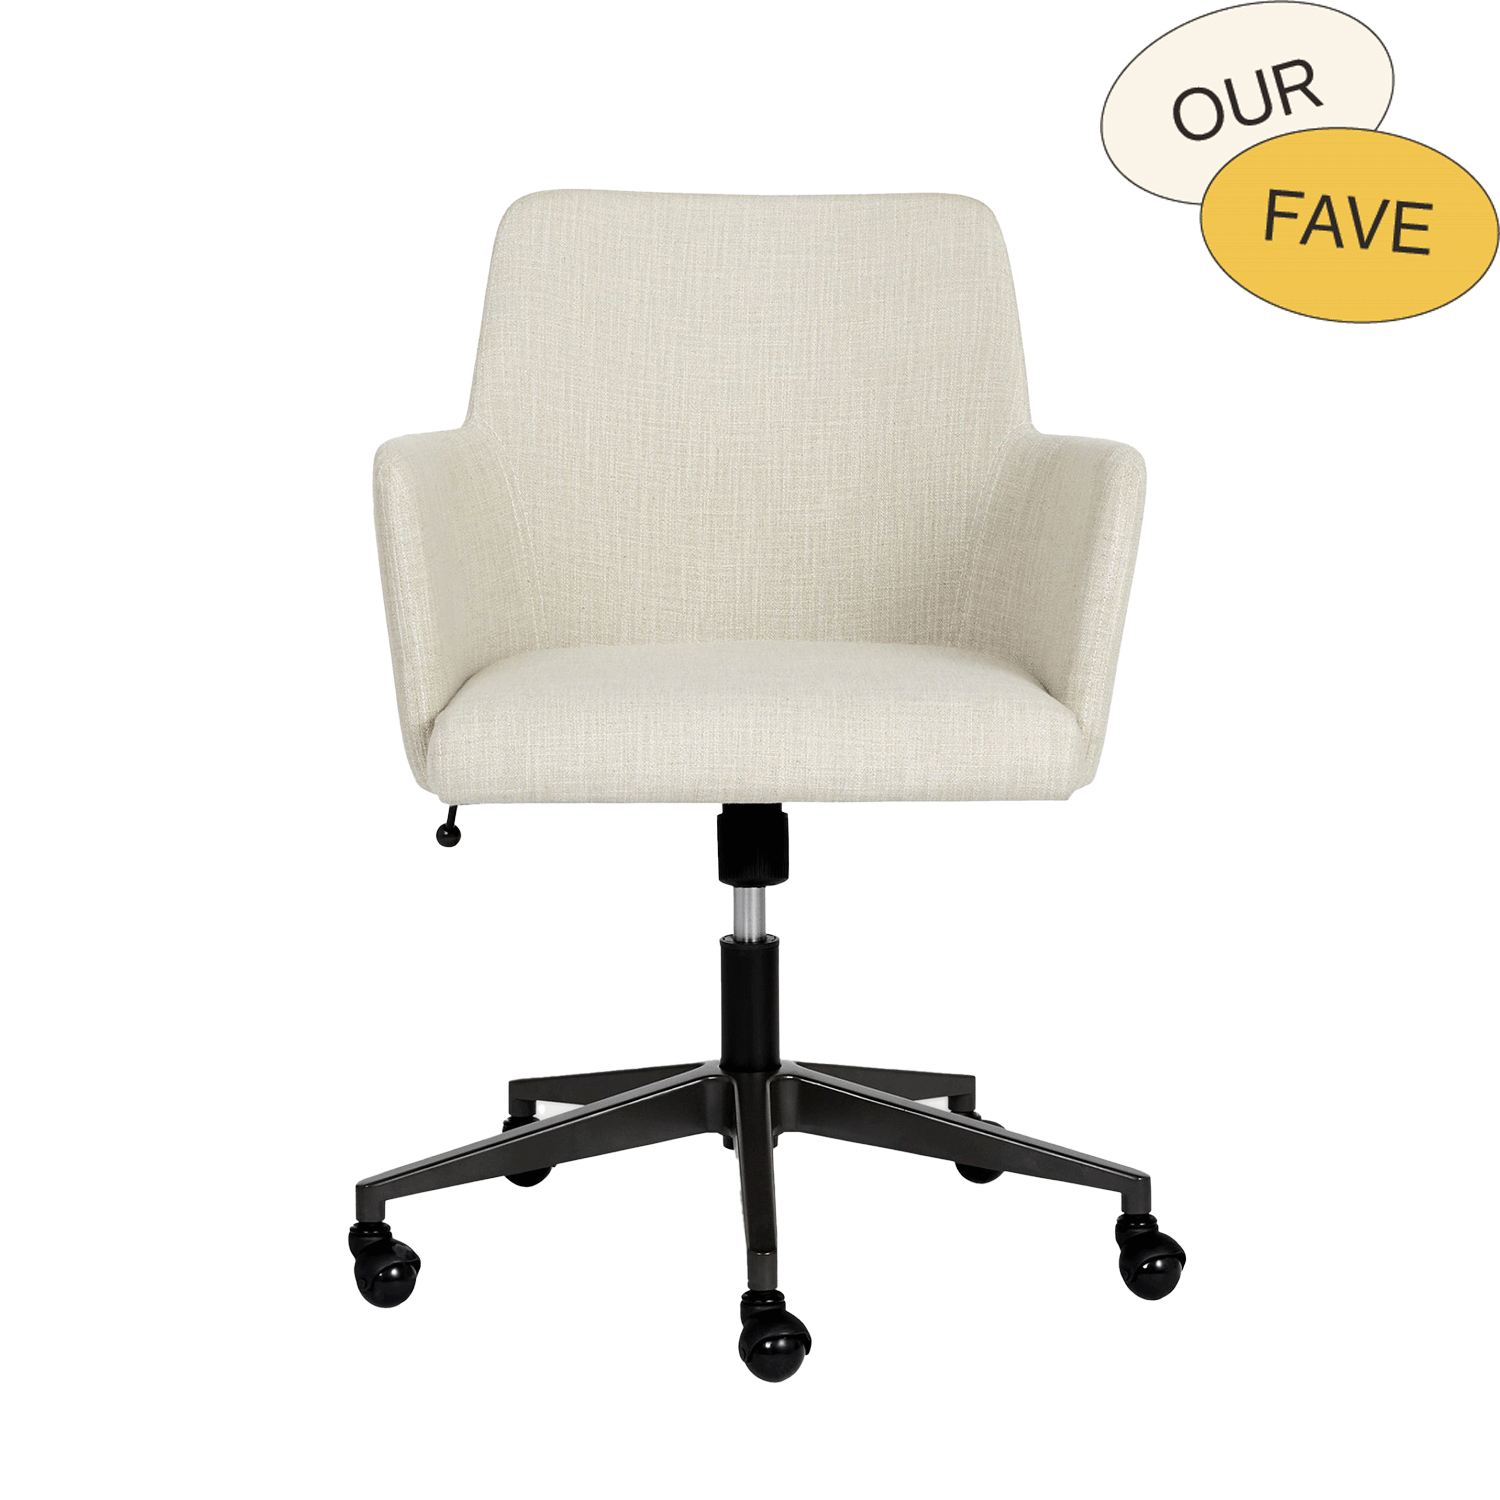 desk chair swivel upholstered